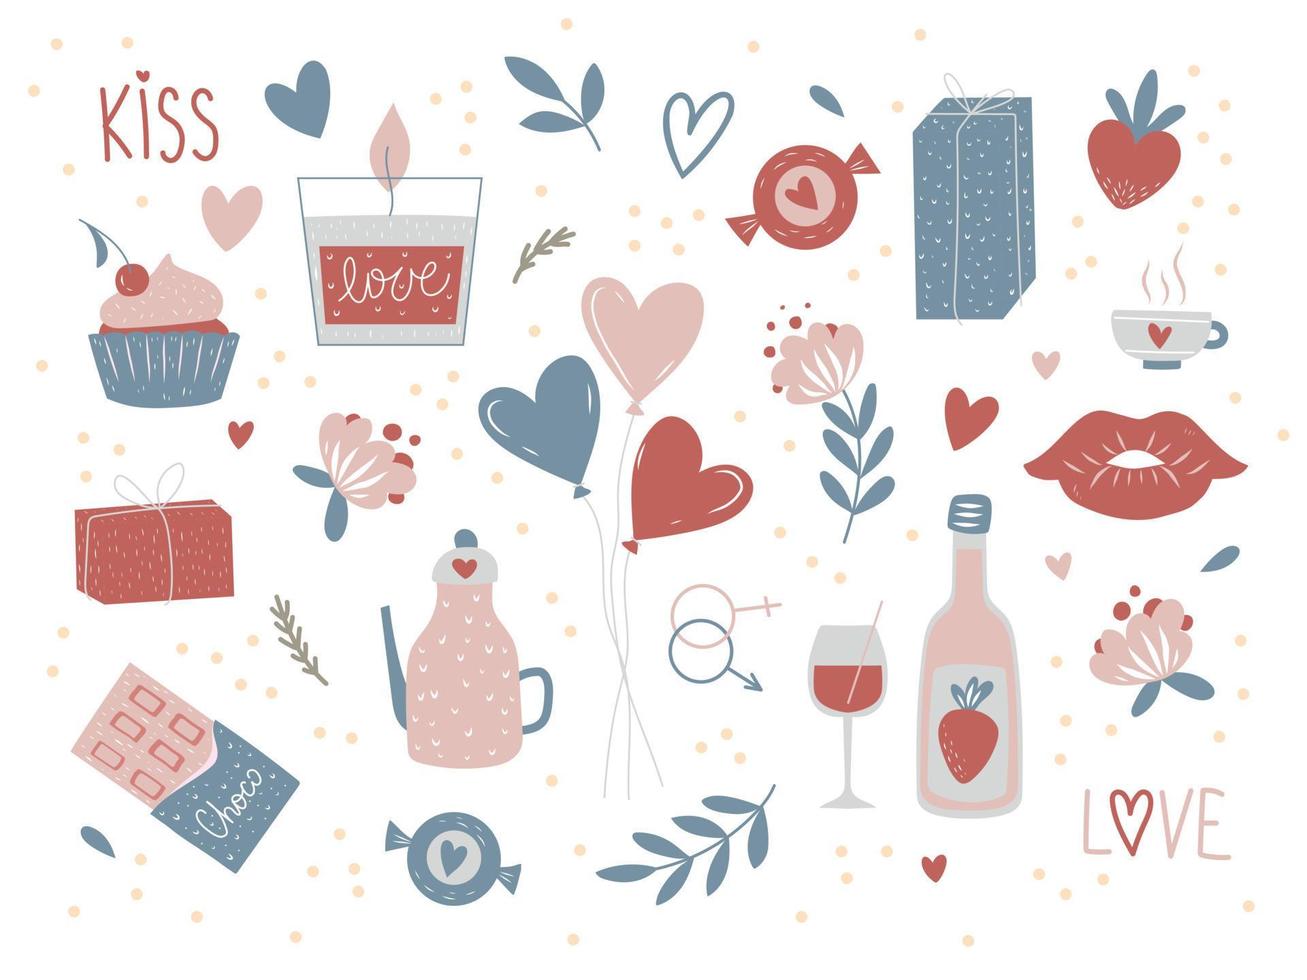 conjunto de elementos de doodle do dia dos namorados. presente, coração, balão, beijo, chave, cartas de amor, rosa, doces e outros para decoração. adesivos românticos desenhados à mão vetor